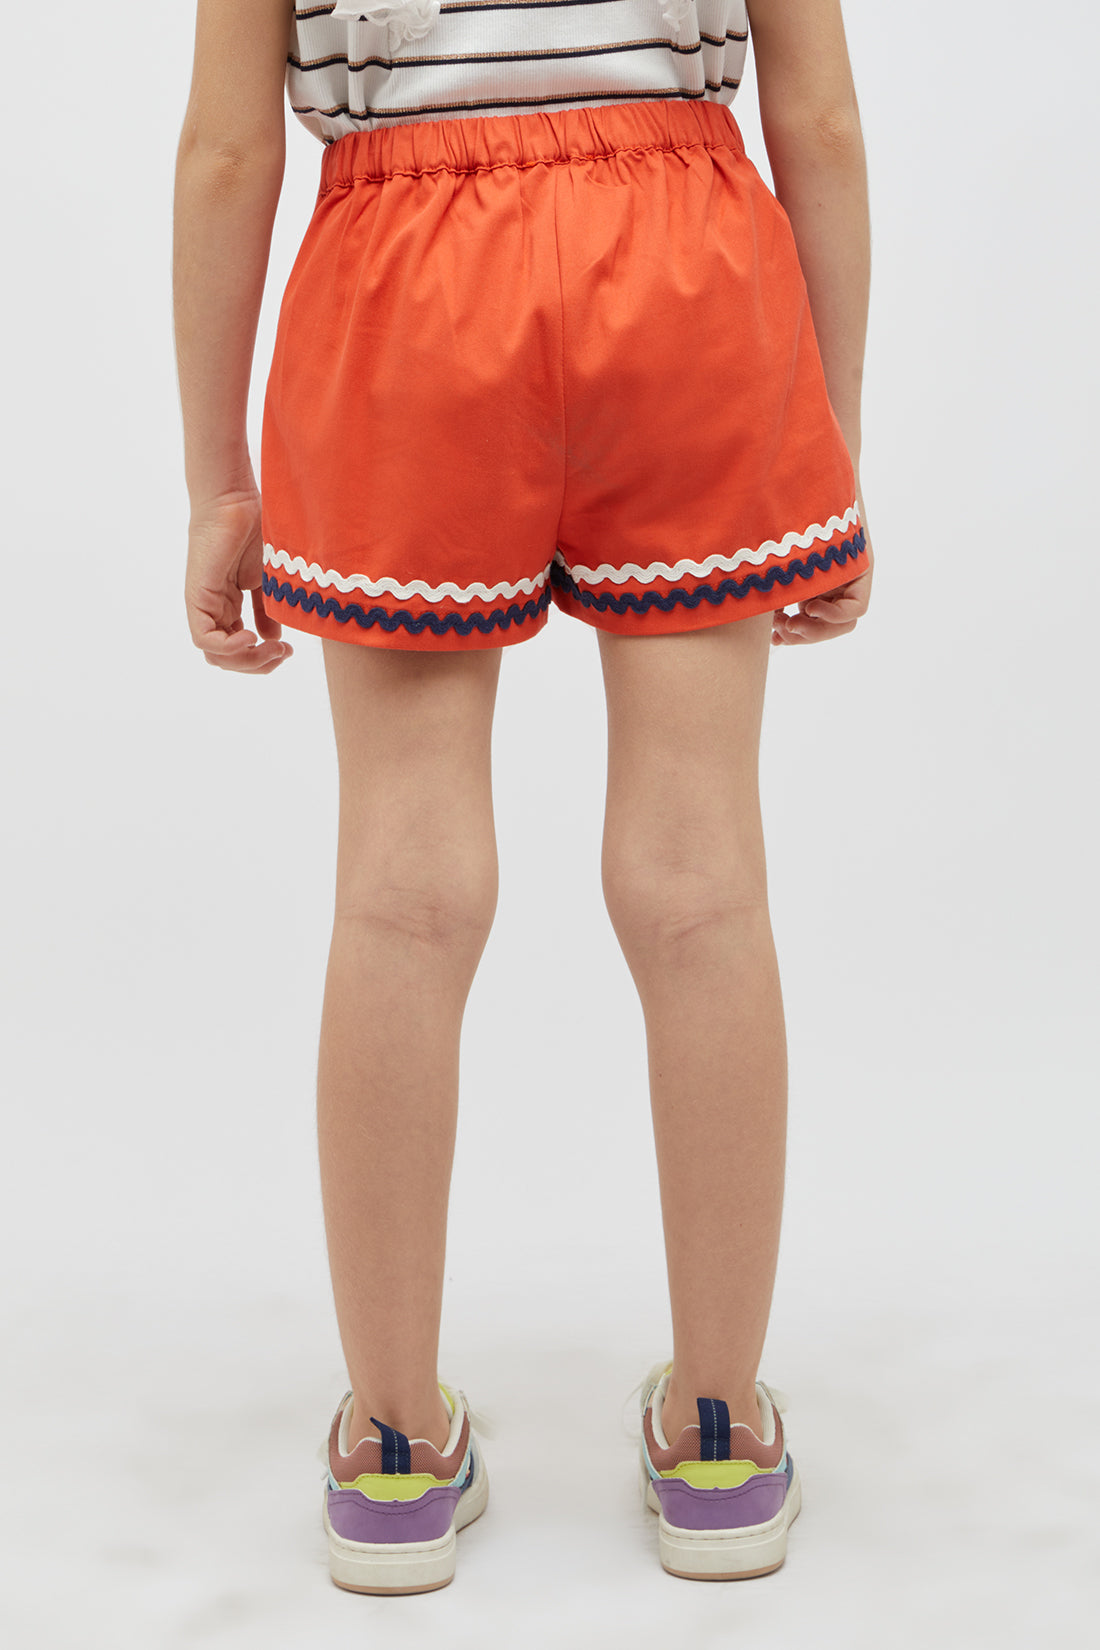 One Friday Orange Shorts